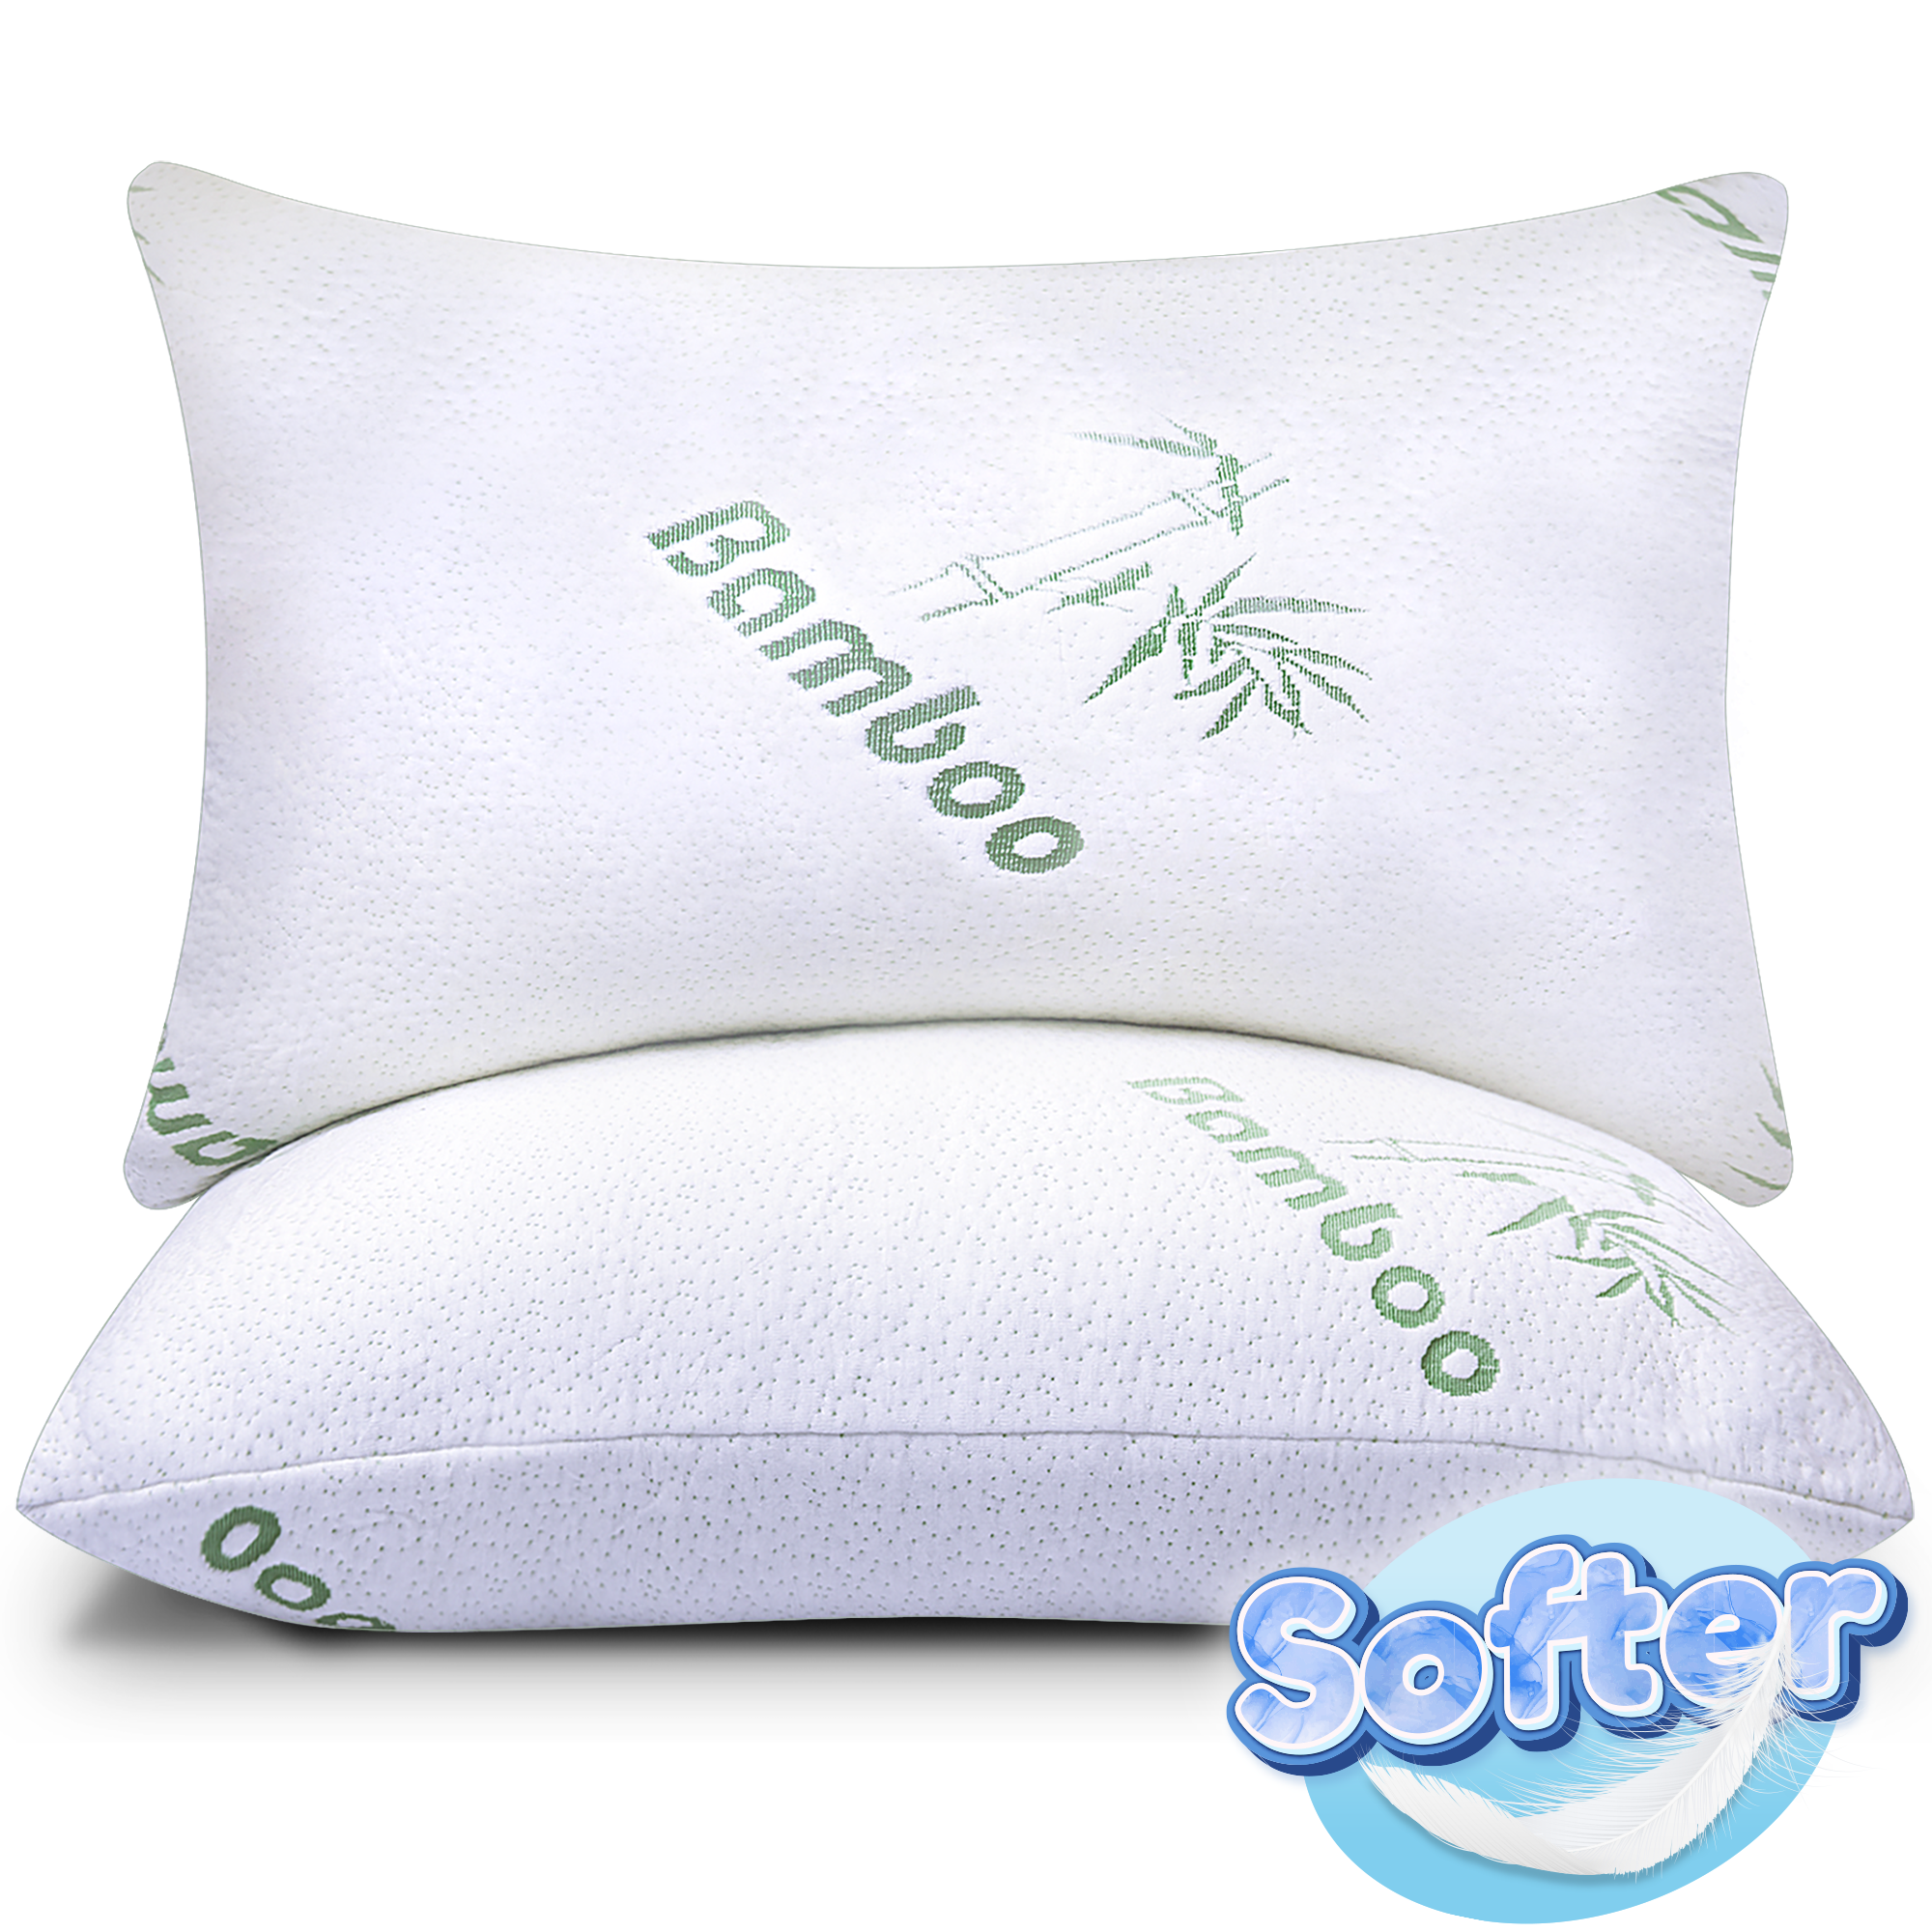 Shredded Memory Foam Pillows (Firm/Soft Queen Size)